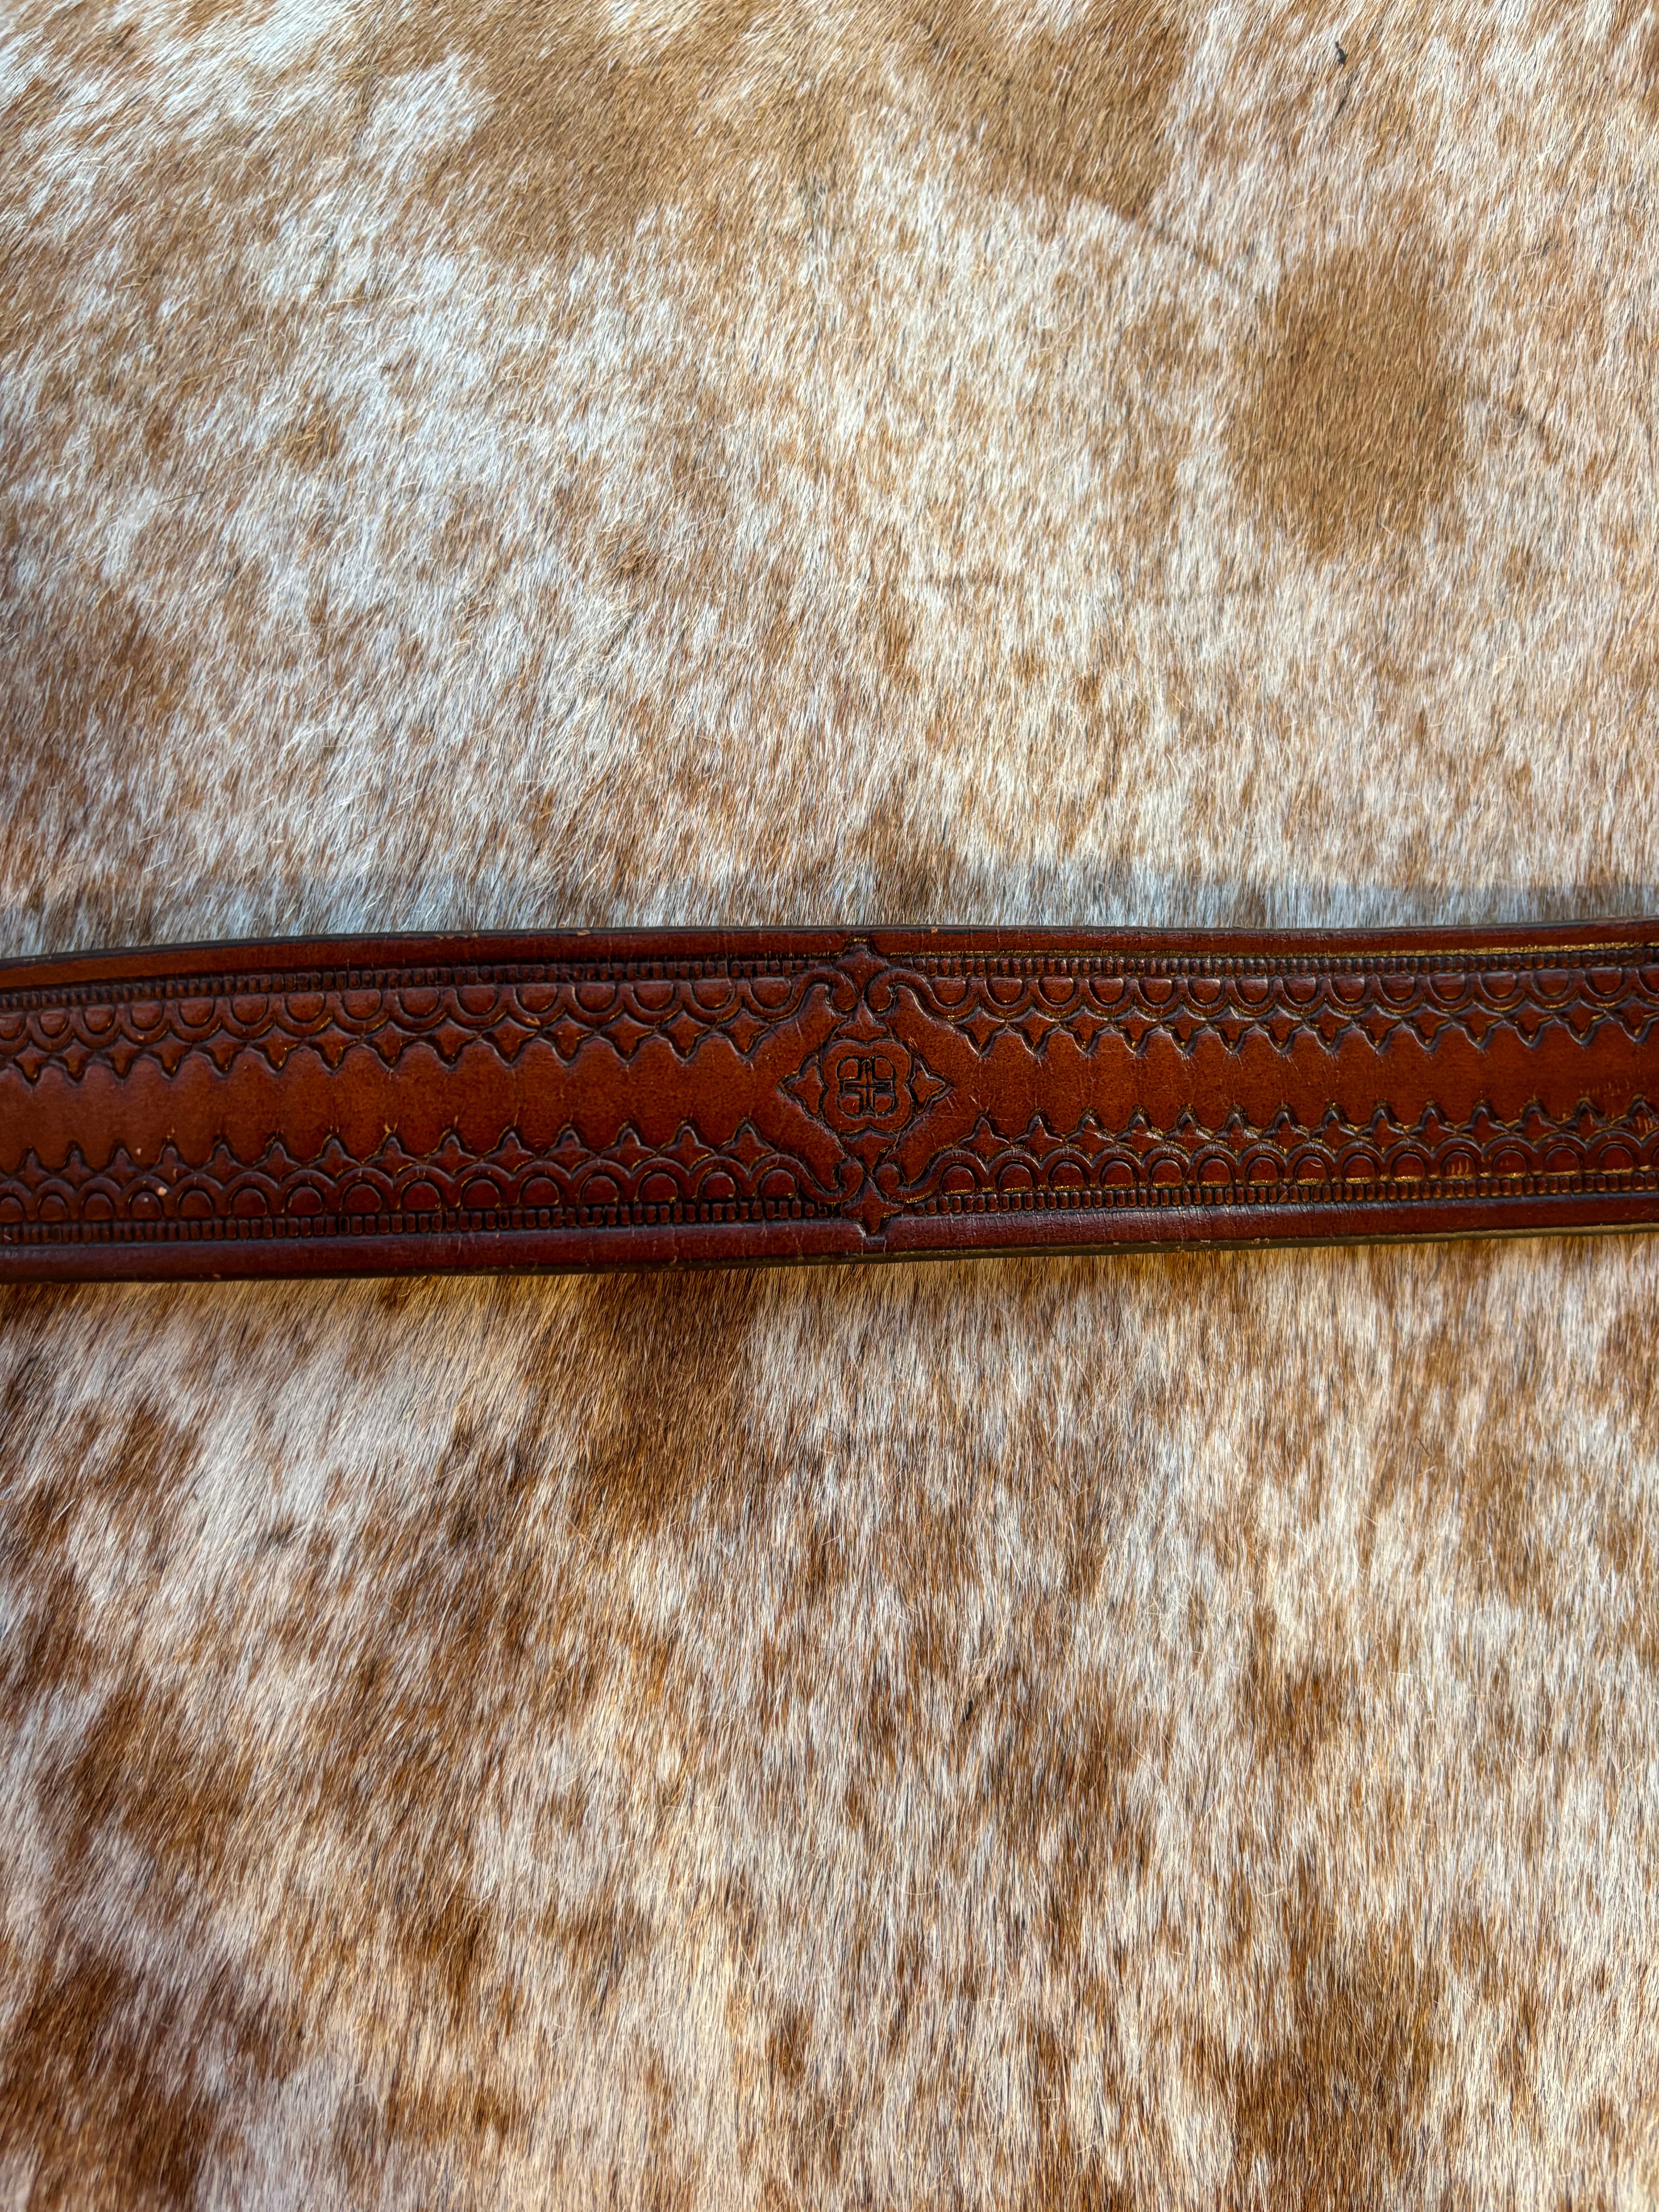 Western Cowboy Belt